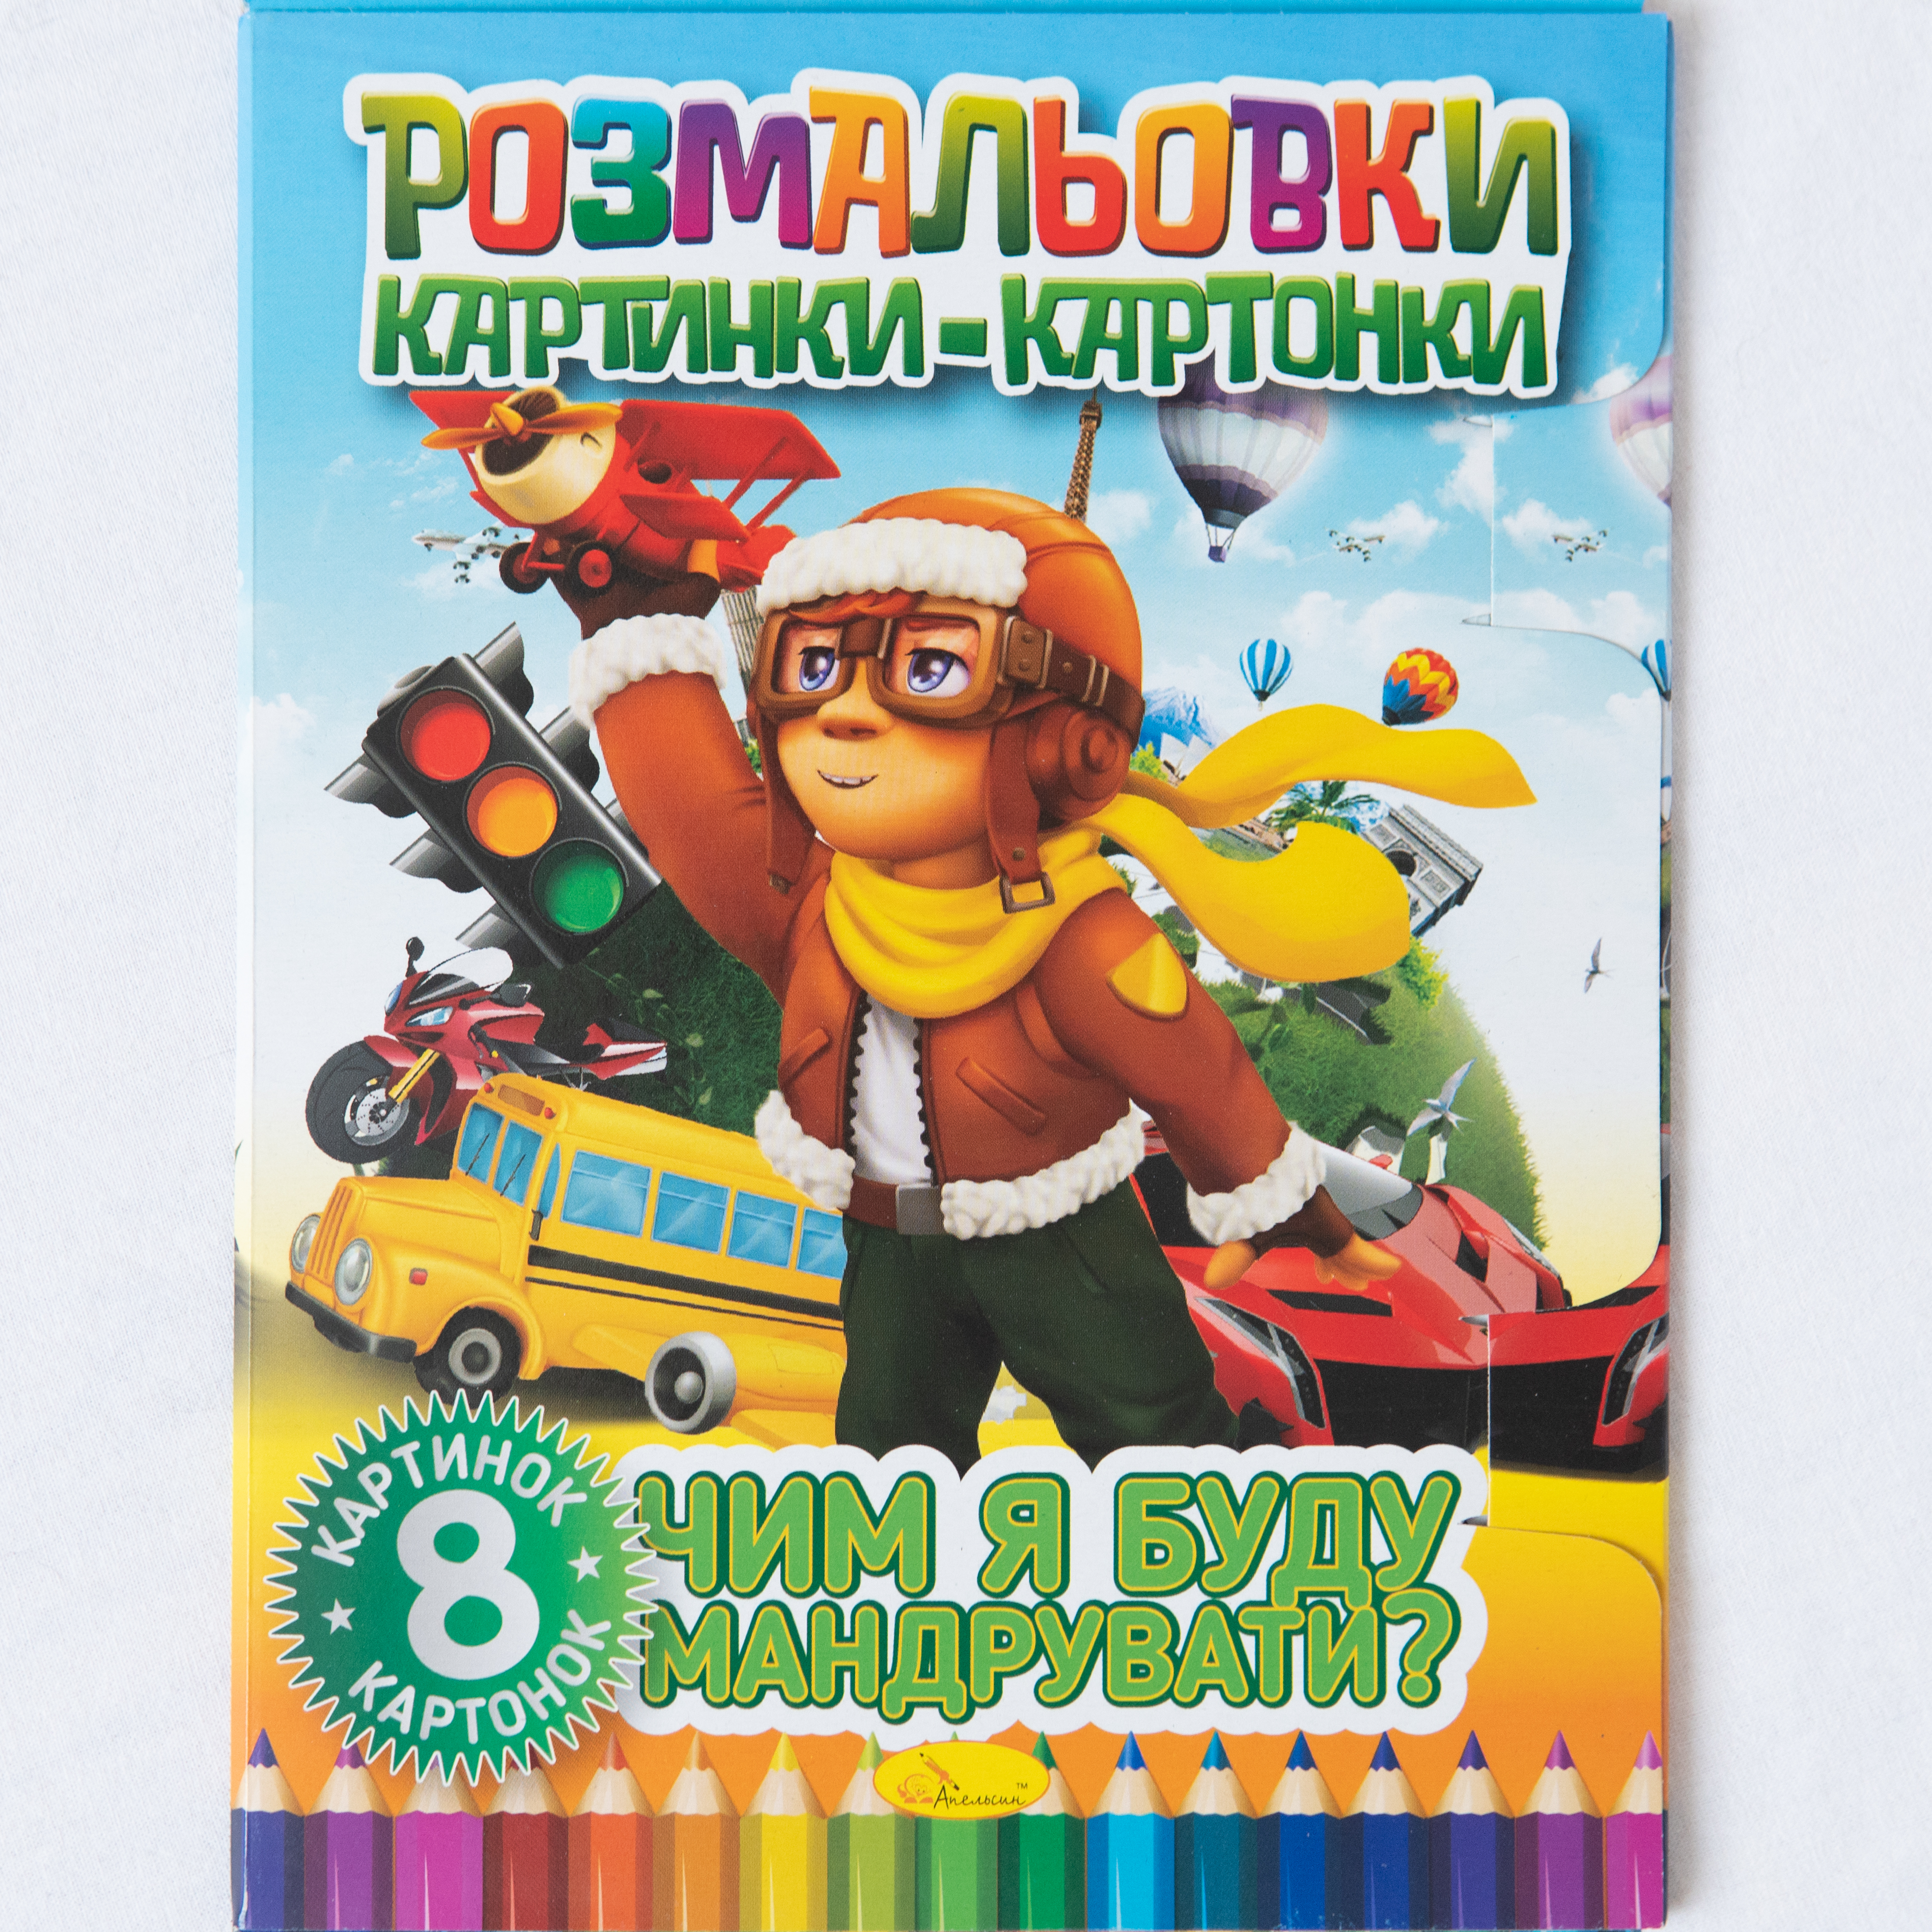 Malbuch mit Kartonbildern Womit werde ich reisen Sprache Ukrainisch/Malbuch mit Kartonbildern Womit werde ich reisen Sprache Ukrainisch